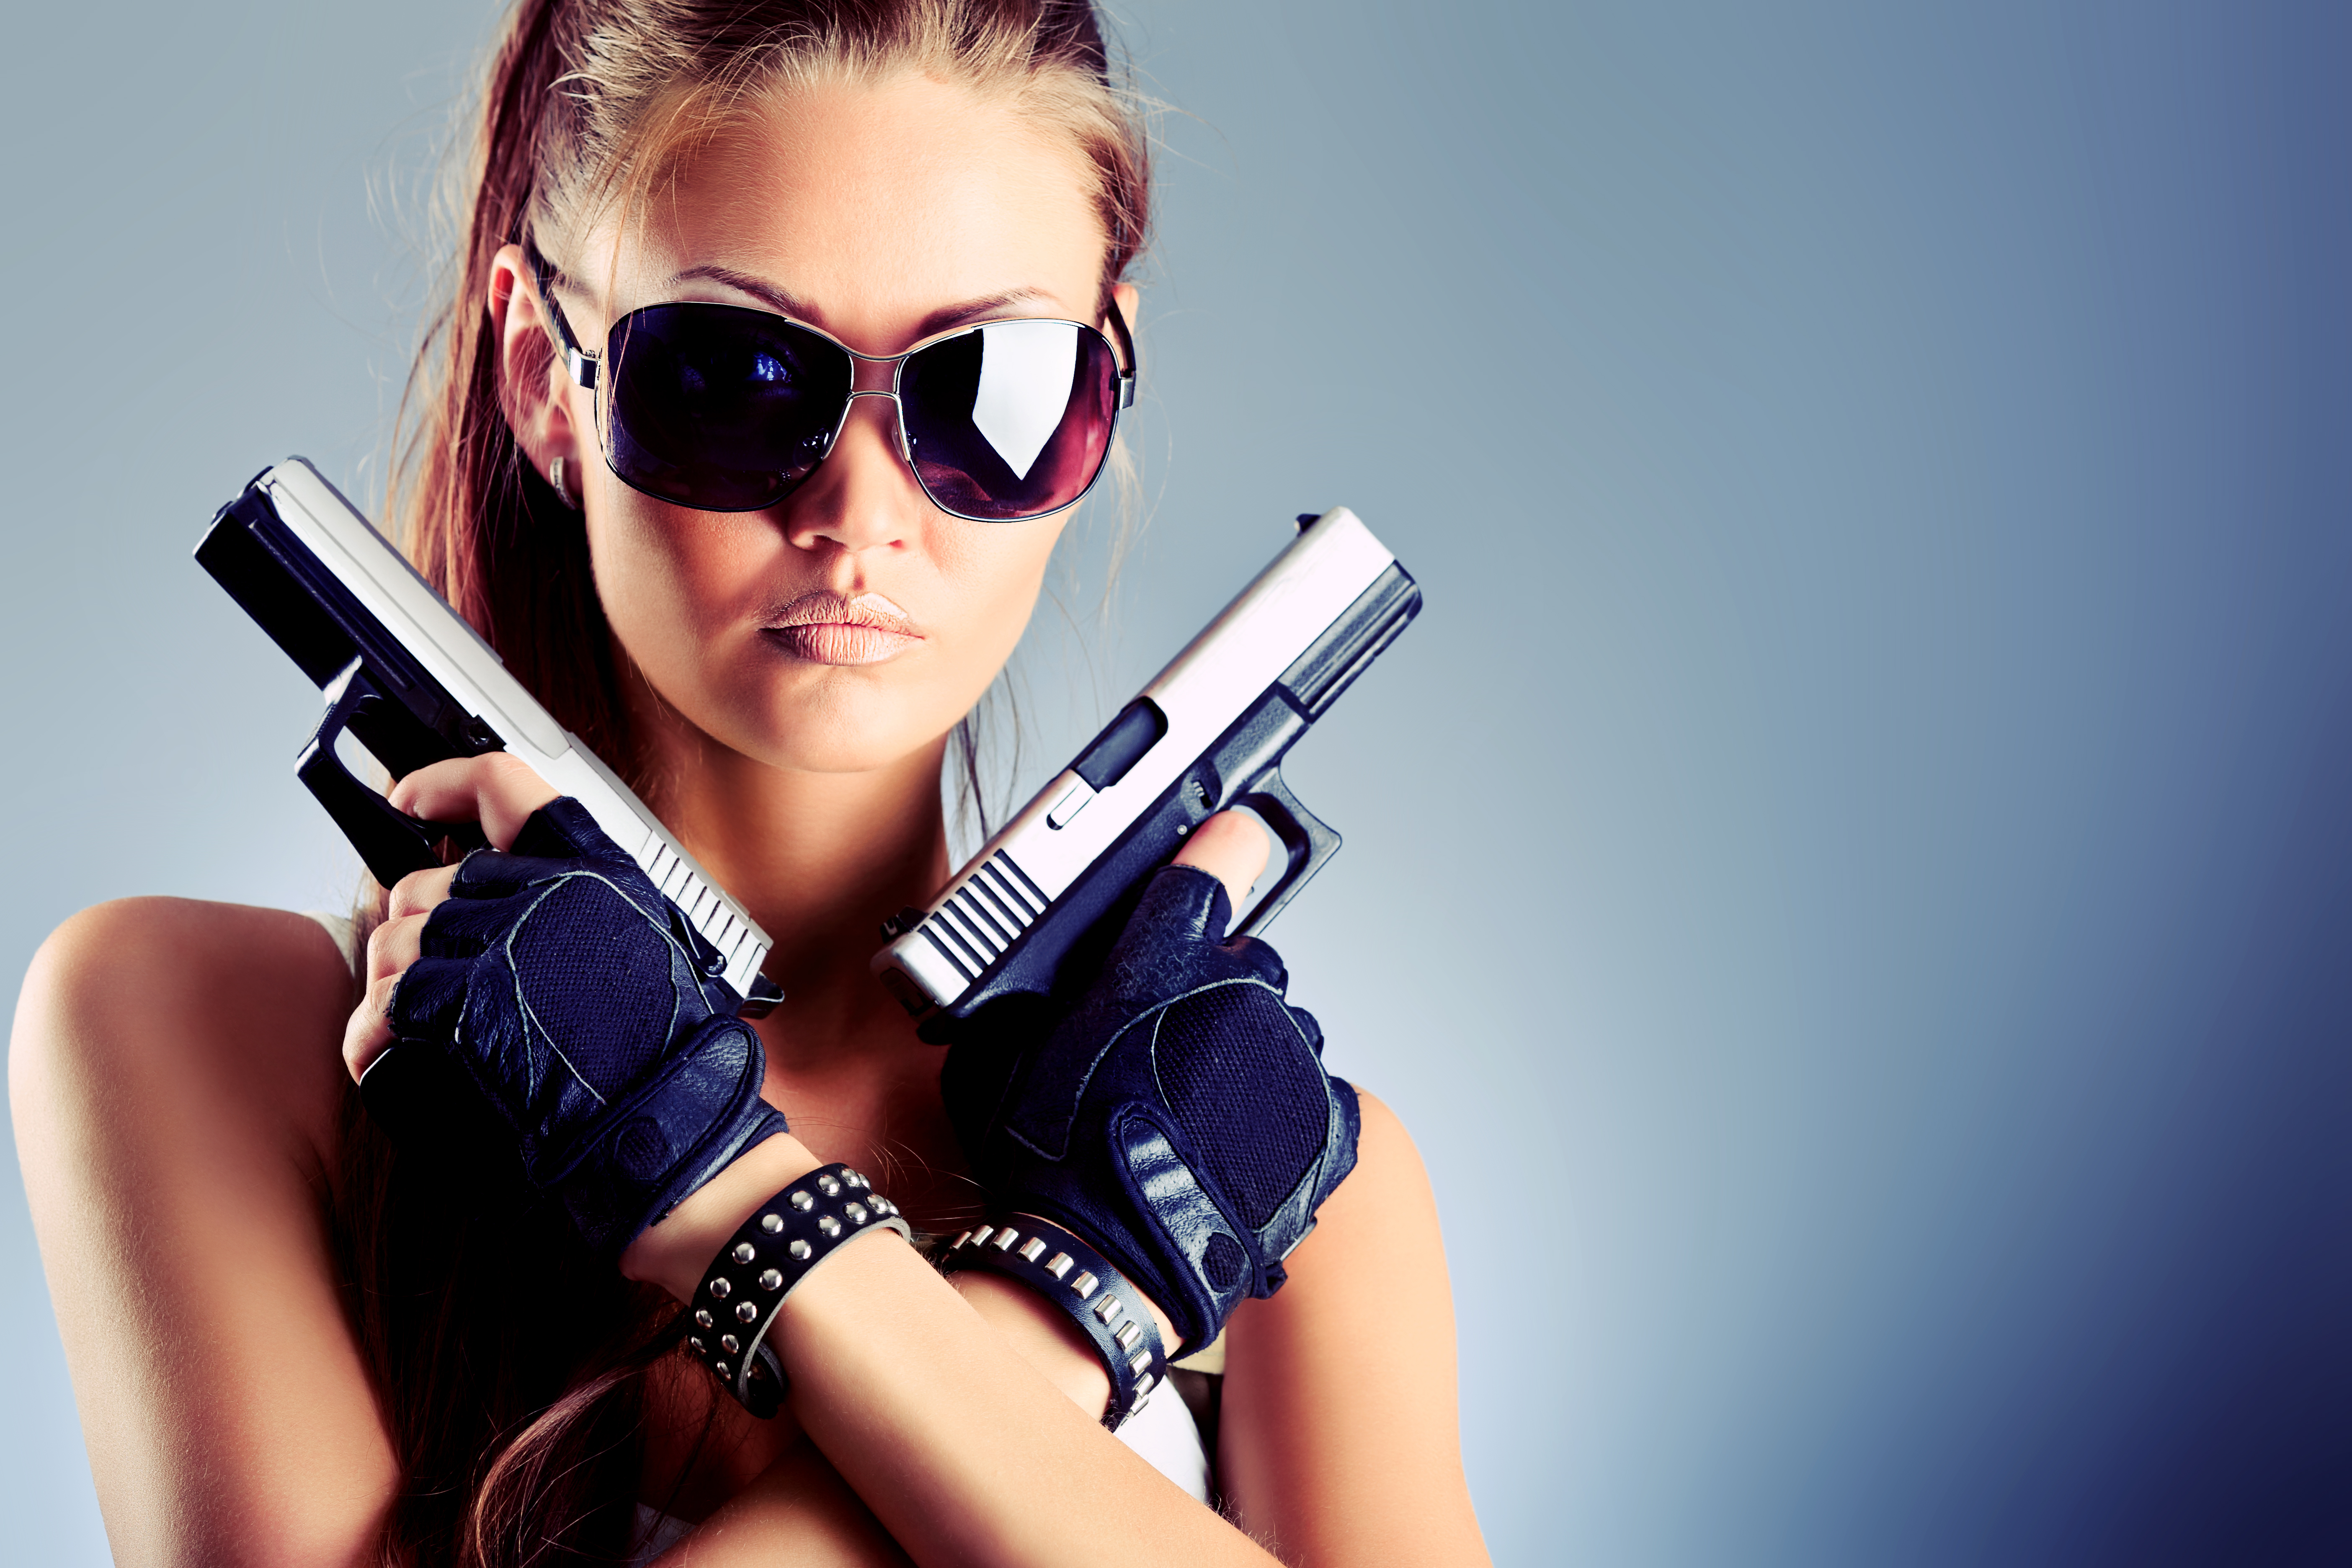 Картинка на аватарку для женщины прикольные. Девушка с пистолетом. Крутая девушка. Крутые девочки. Красивая девушка с пистолетом.